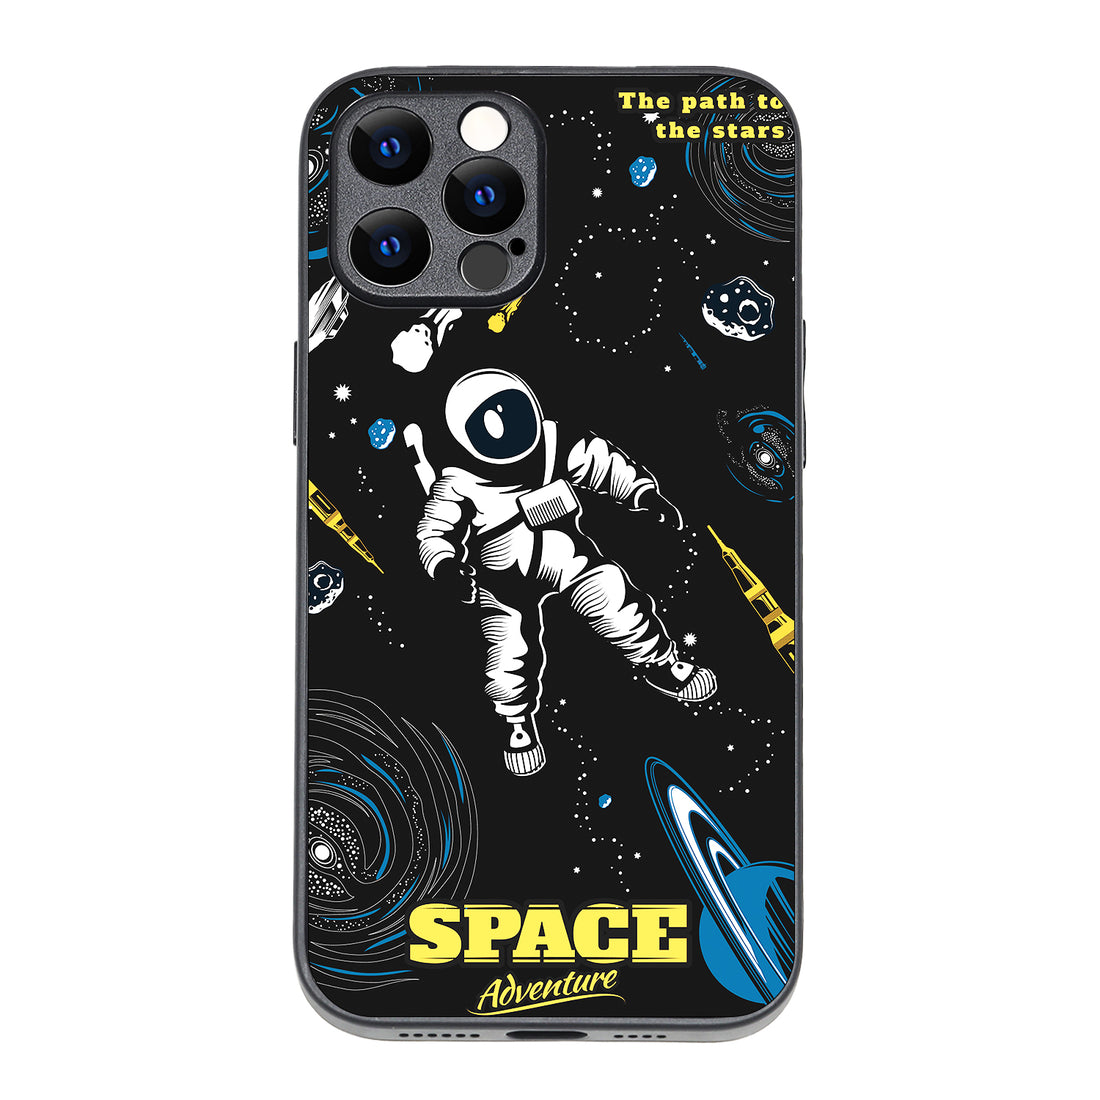 Astronaut Travel iPhone 12 Pro Max Case